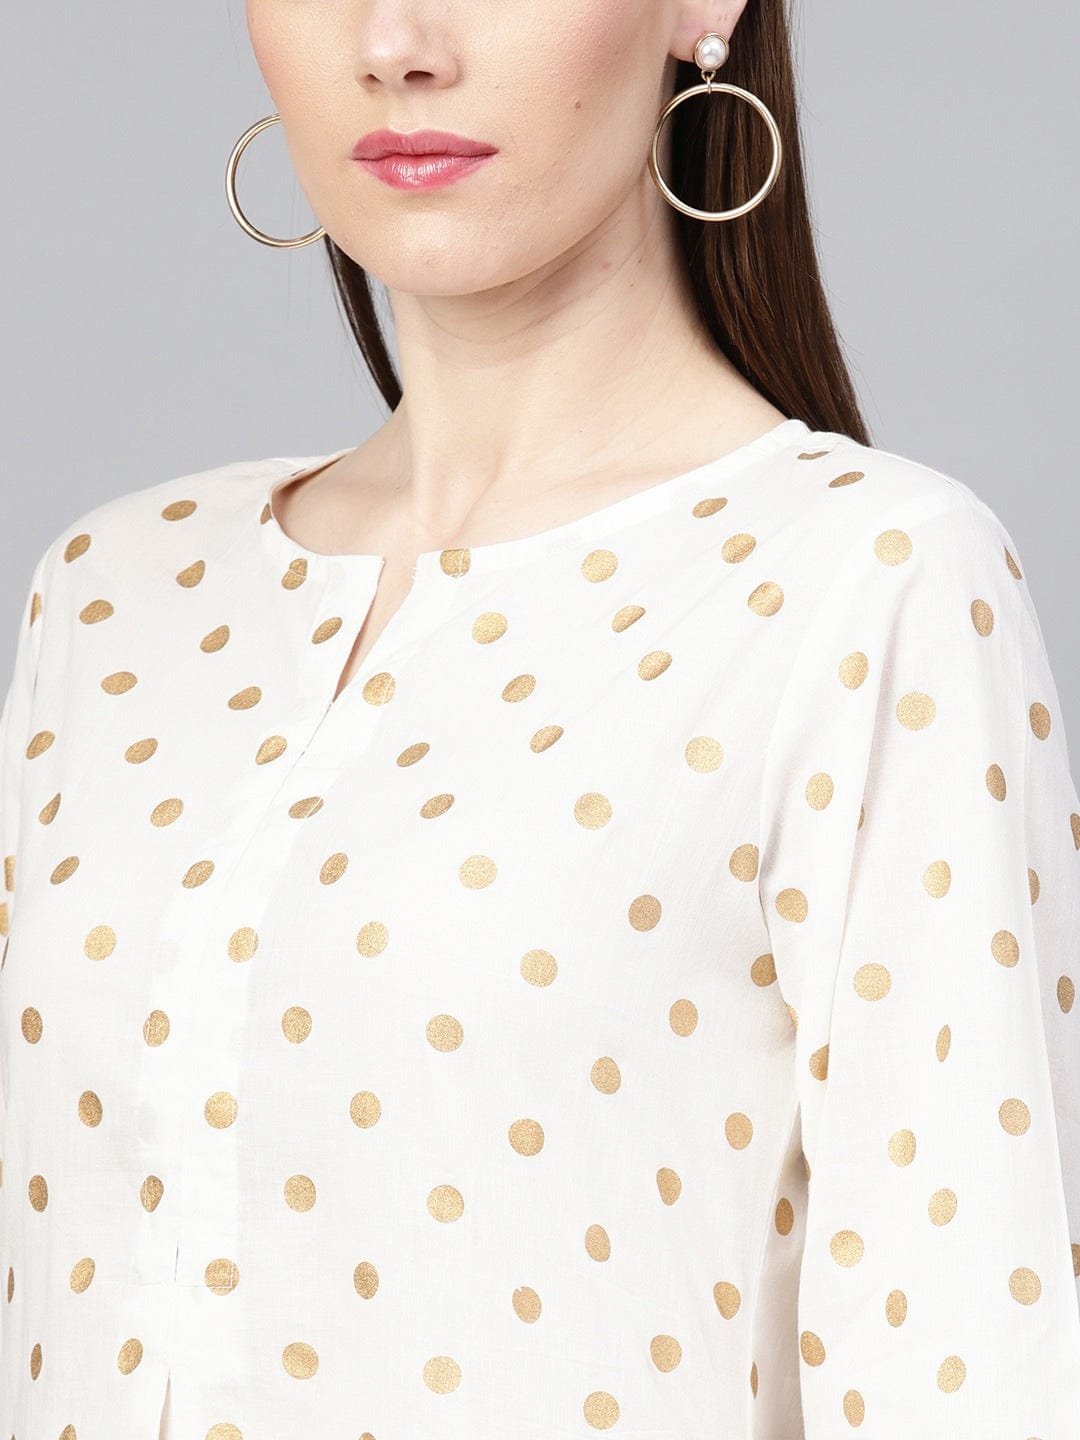 Women's White & Beige Polka Dots Printed A-Line Dress - Varanga